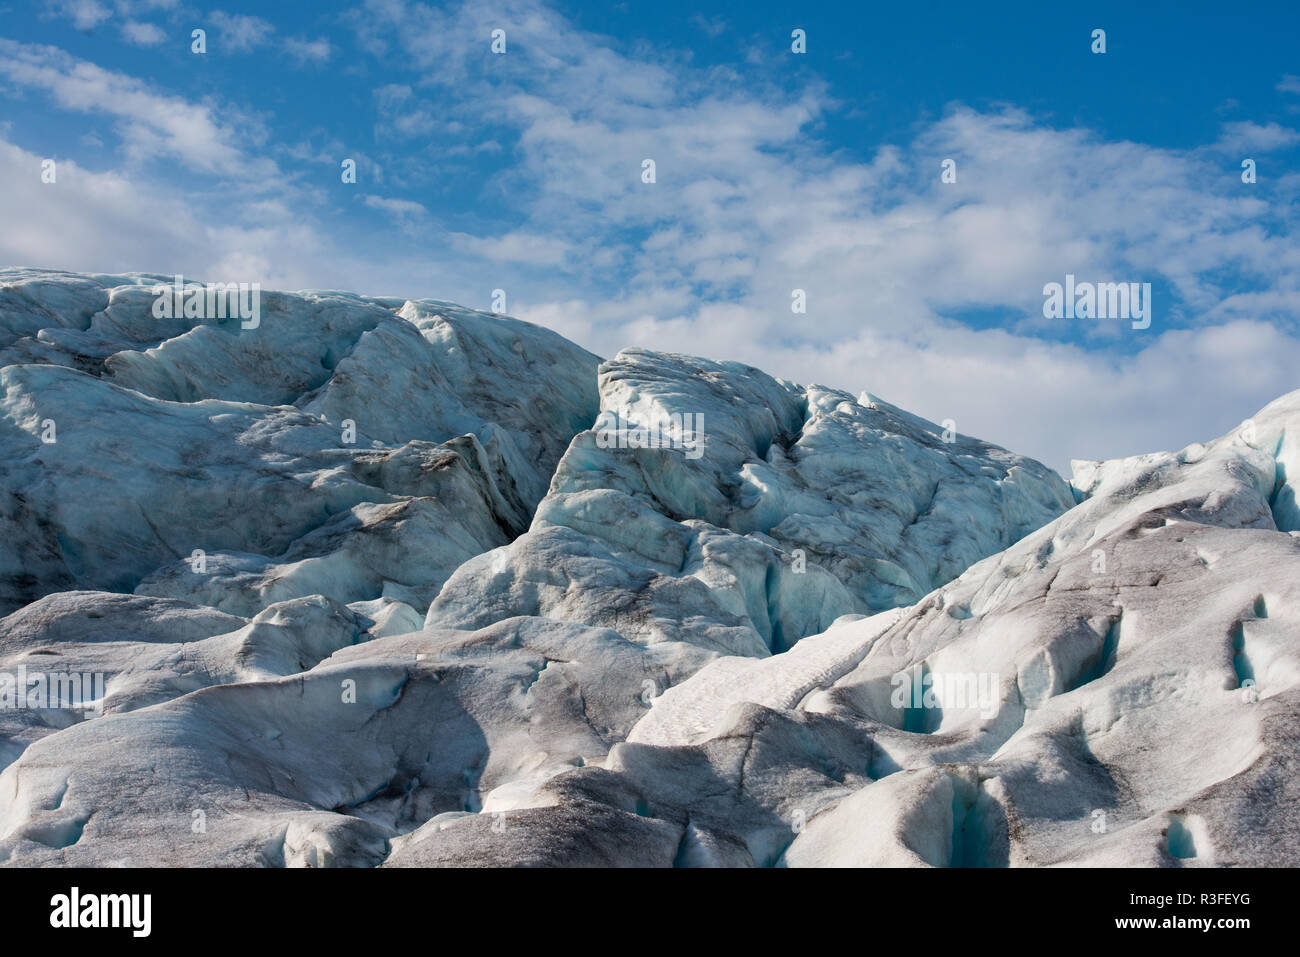 Dettaglio di ghiaccio del ghiacciaio Svelgabreen è una delle tante lingue del grande ghiacciaio Folgefonna, nel Folgefonna National Park, Norvegia. La sua reac Foto Stock